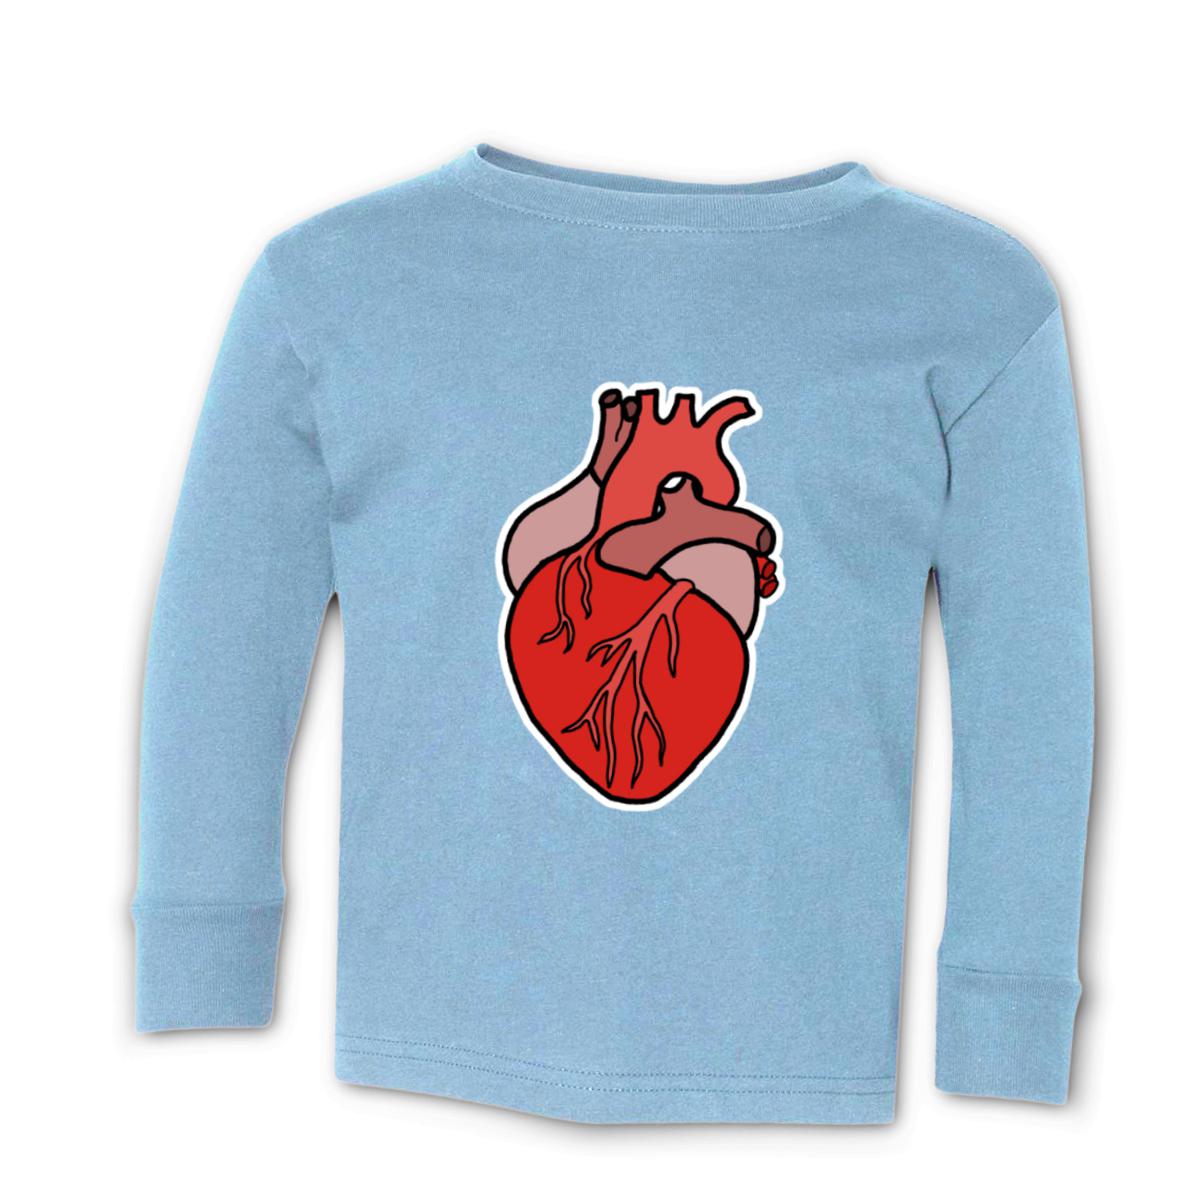 Illustrative Heart Toddler Long Sleeve Tee 4T light-blue